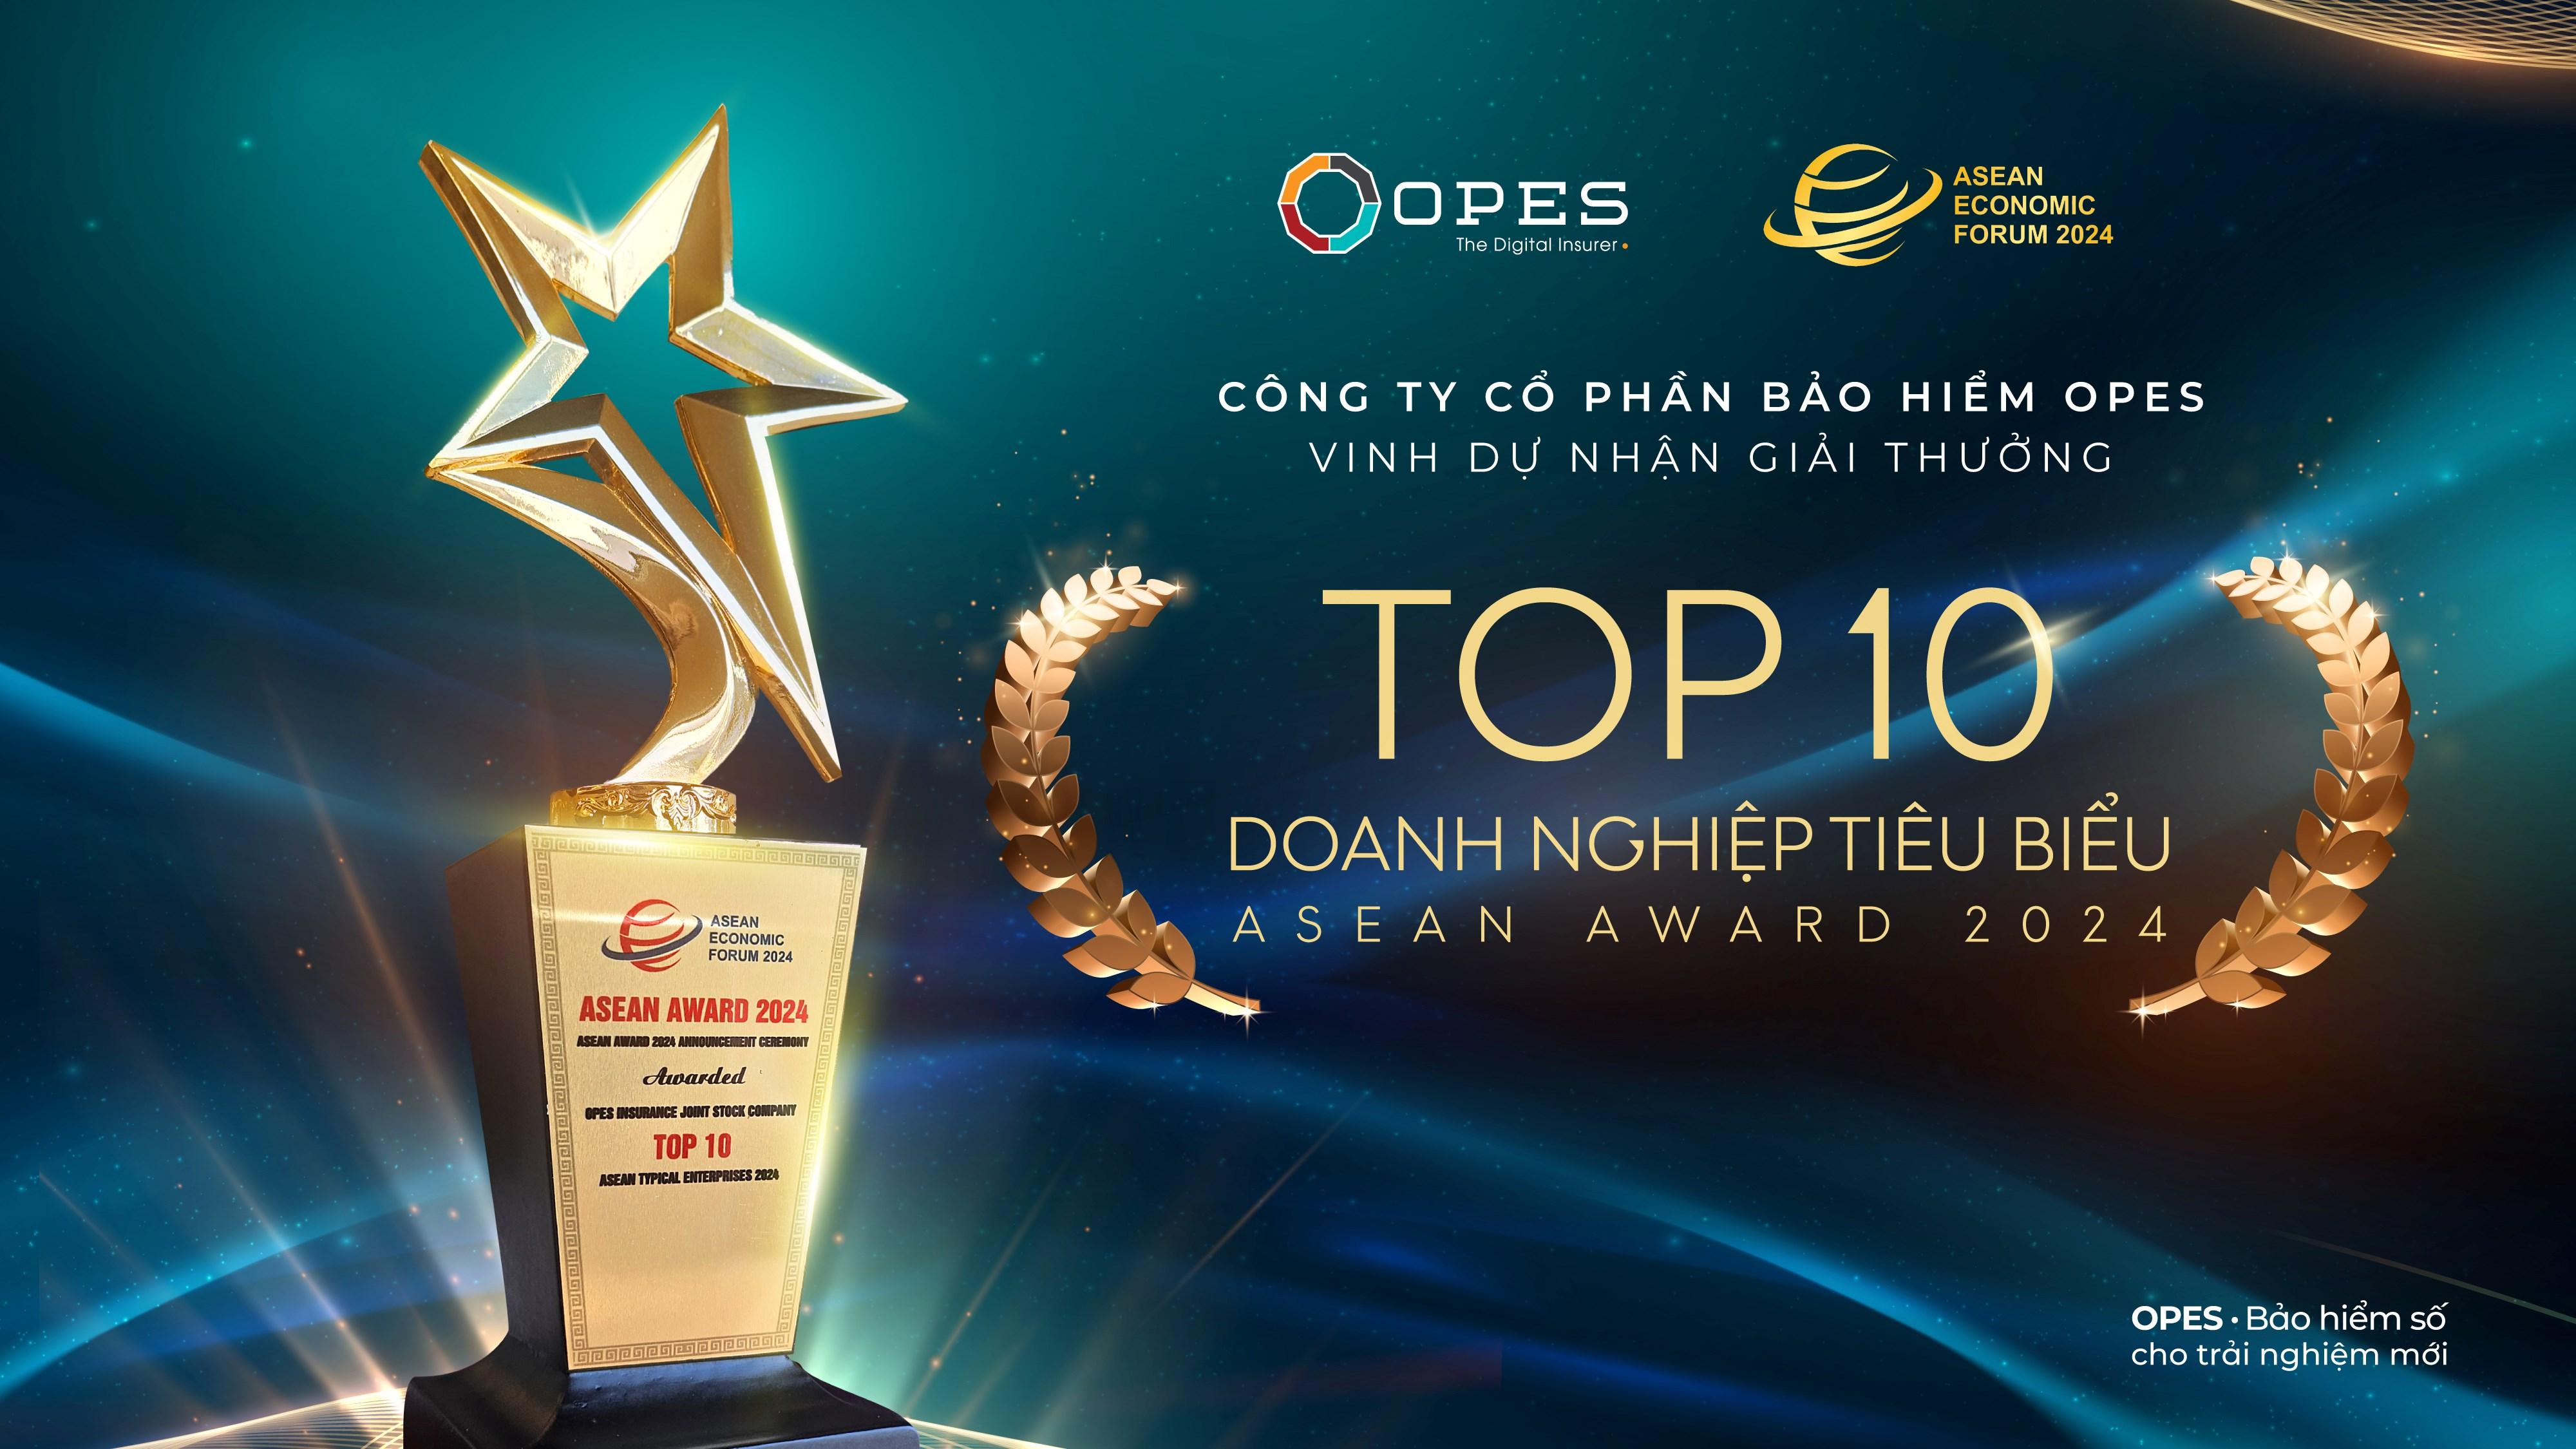 Bảo hiểm OPES lot Top 10 doanh nghiệp tiêu biểu khu vực Asean